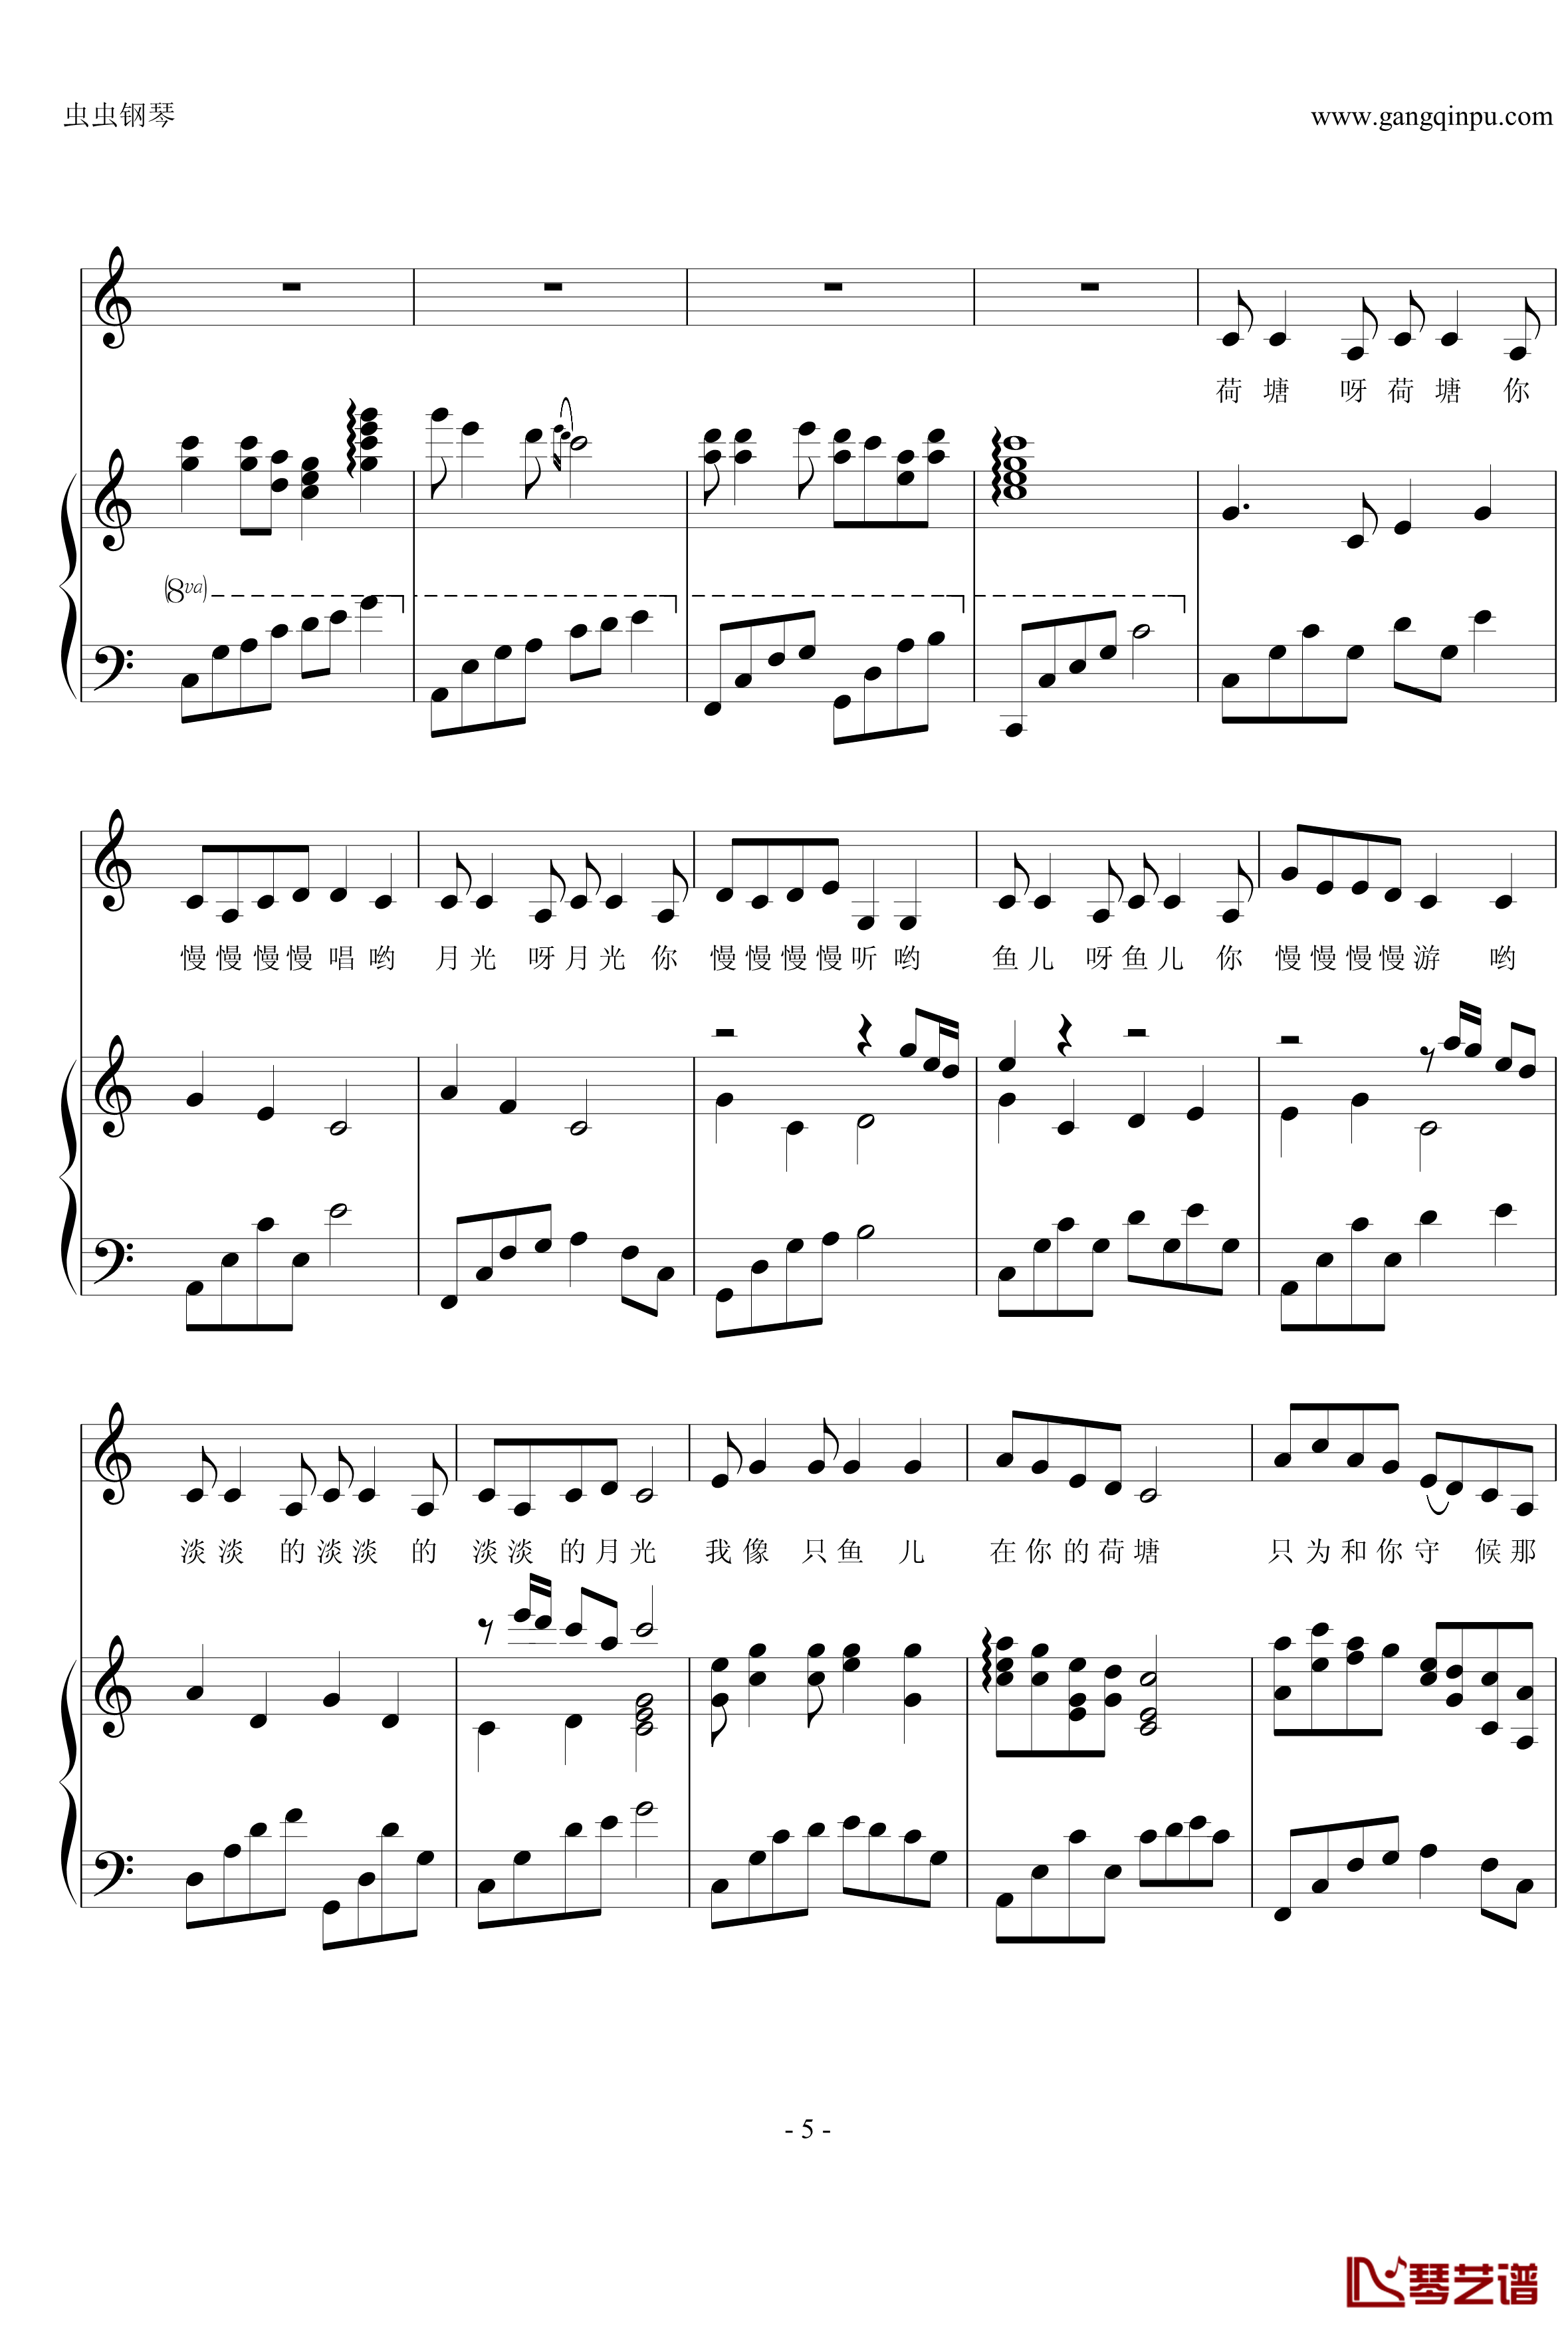 荷塘月色钢琴谱-钢伴弹唱-带歌词-凤凰传奇5